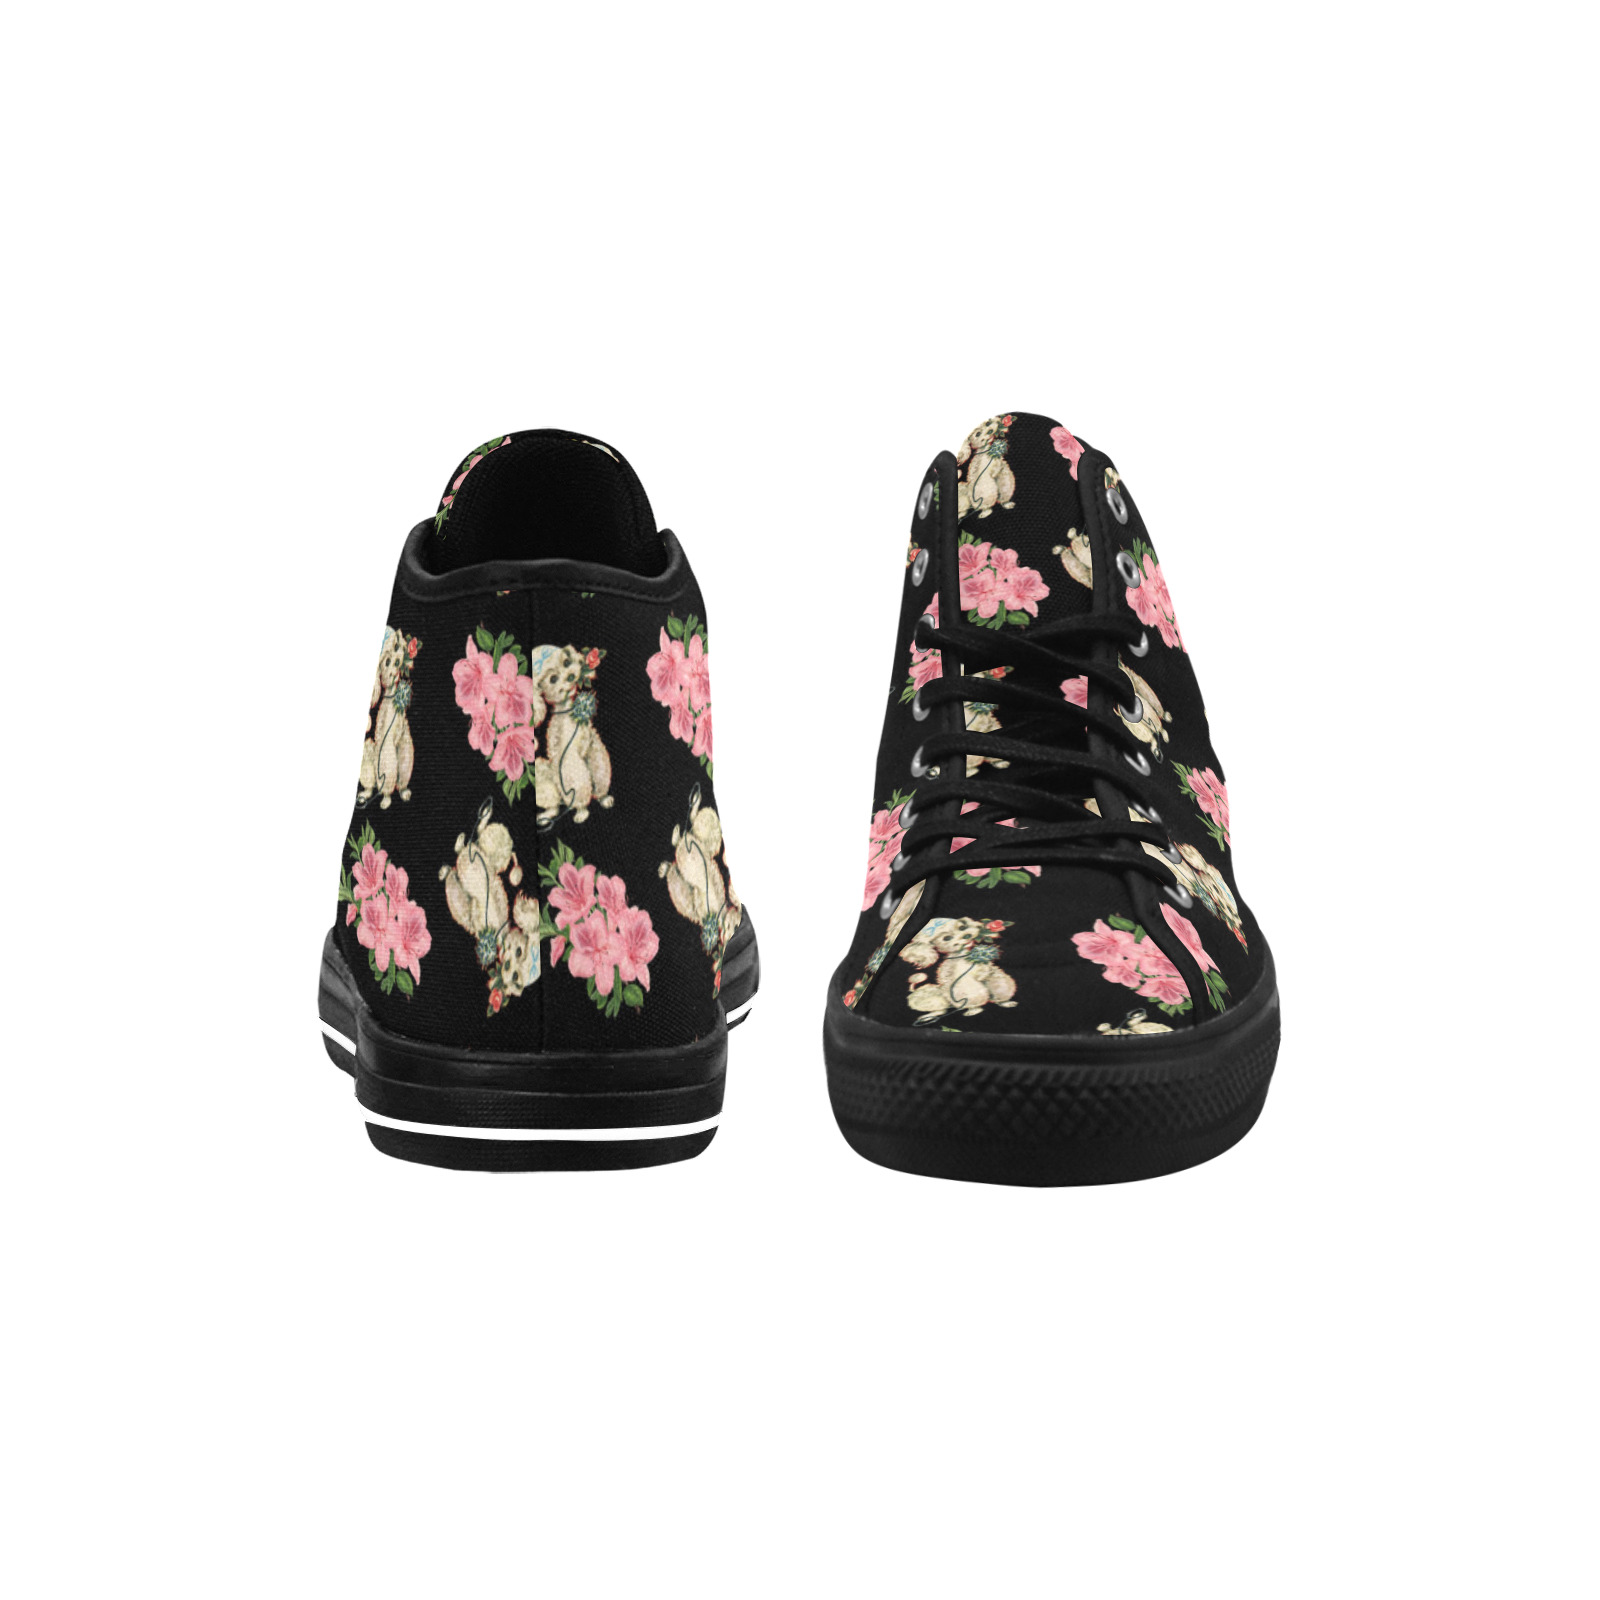 retro dog floral pattern Vancouver H Women's Canvas Shoes (1013-1)